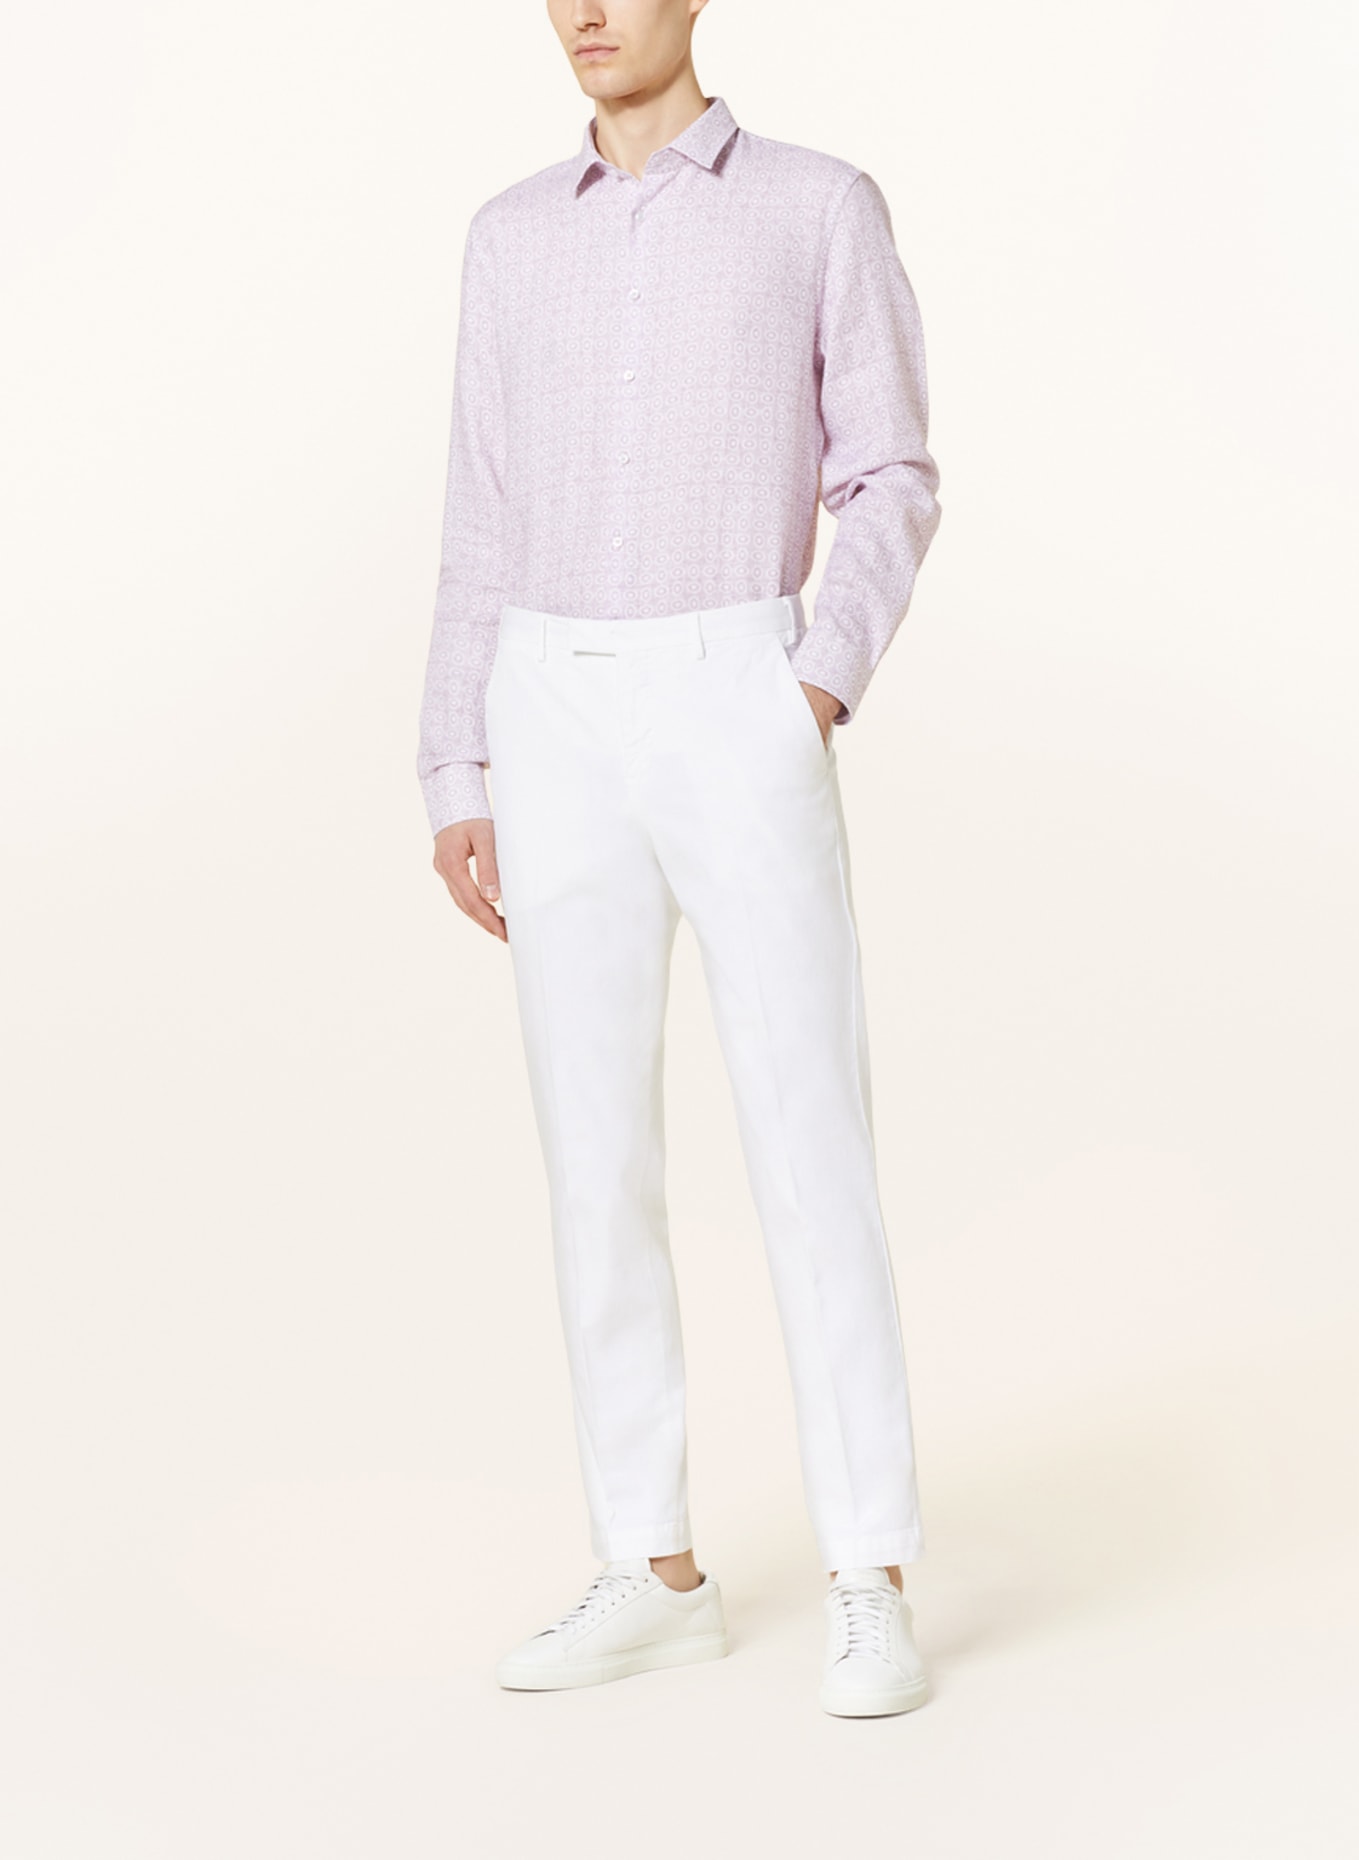 Q1 Manufaktur Linen shirt extra slim fit, Color: LIGHT PURPLE/ ECRU (Image 2)